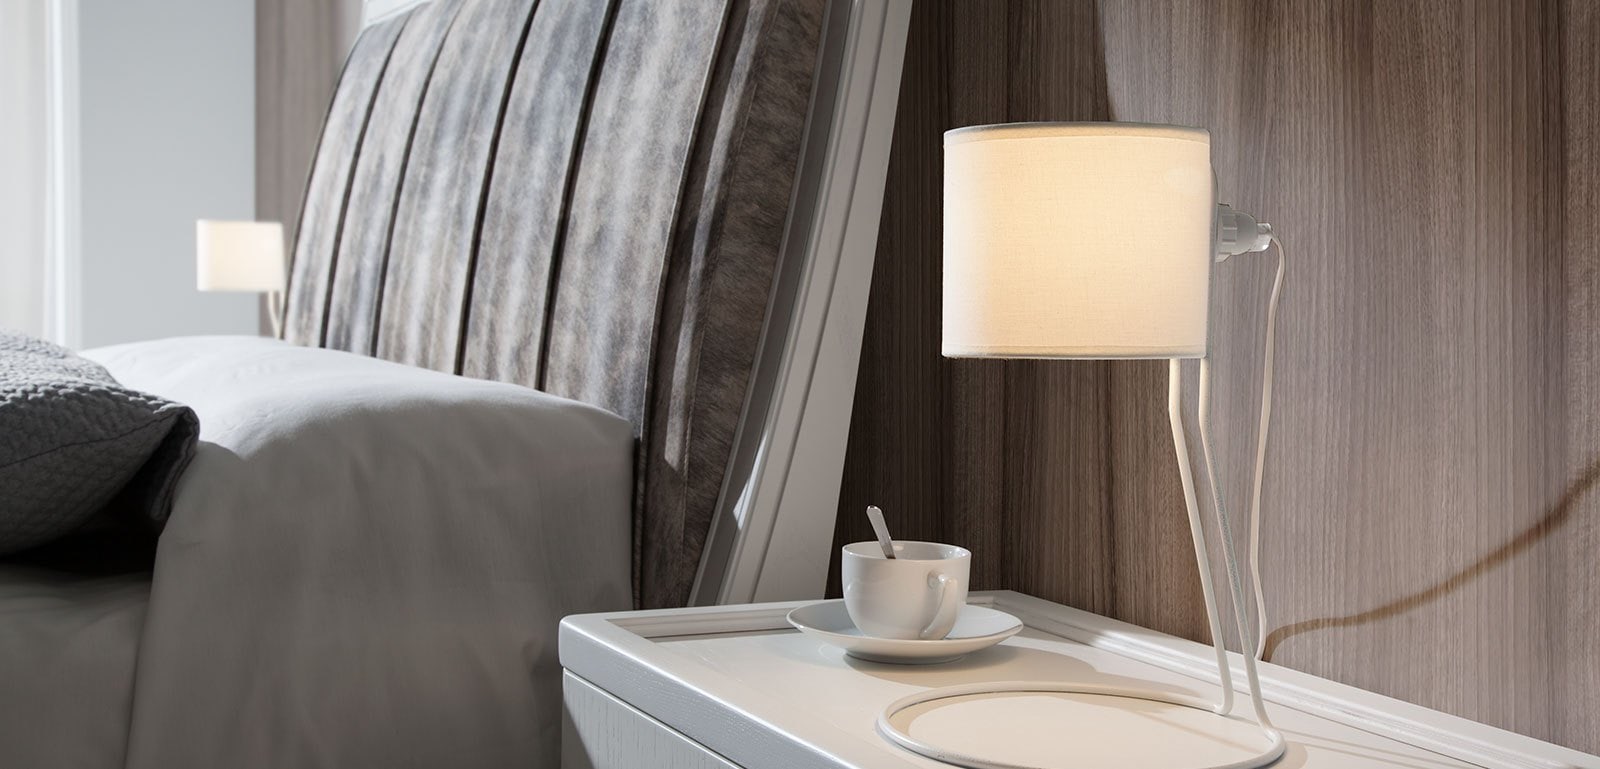 Lámparas de mesa ideales para dormitorio | Decoración con